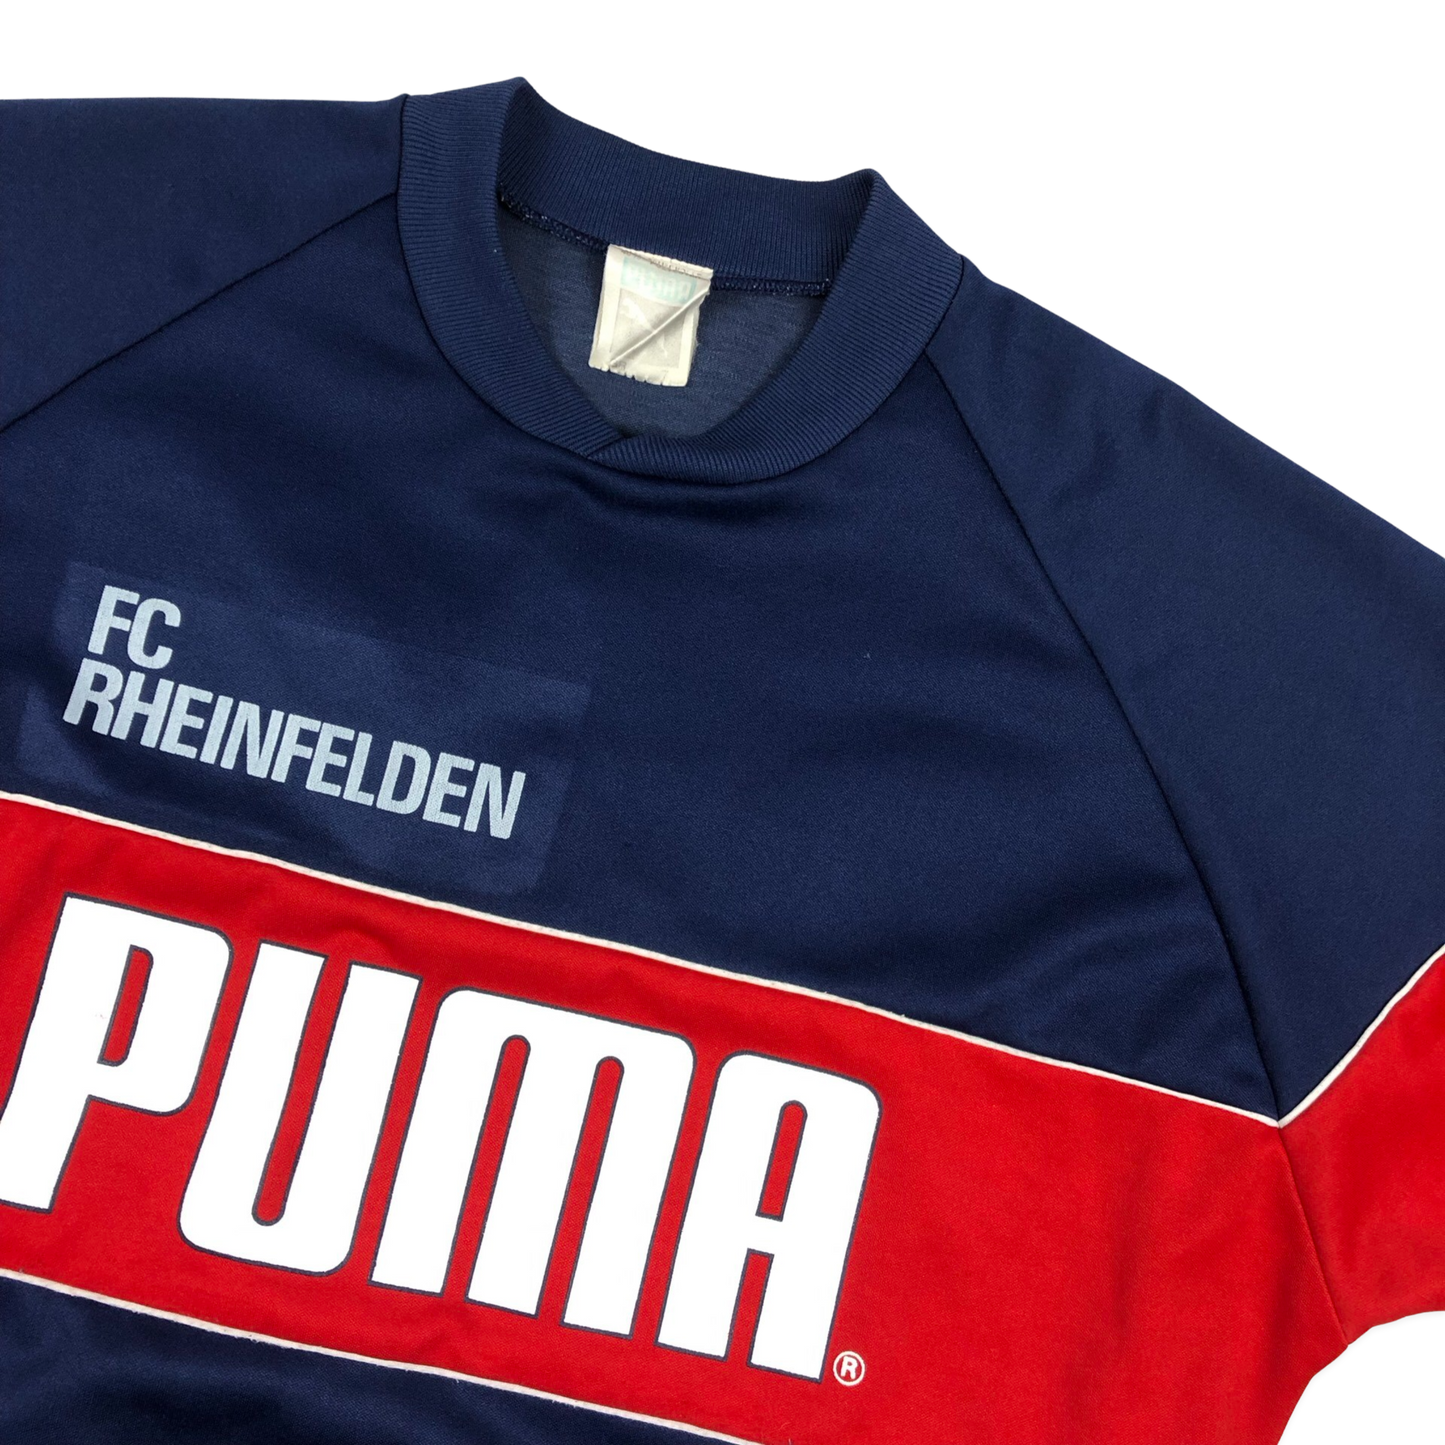 Vintage 70s Puma "FC Rheinfelden" Red and Navy Sweatshirt XL